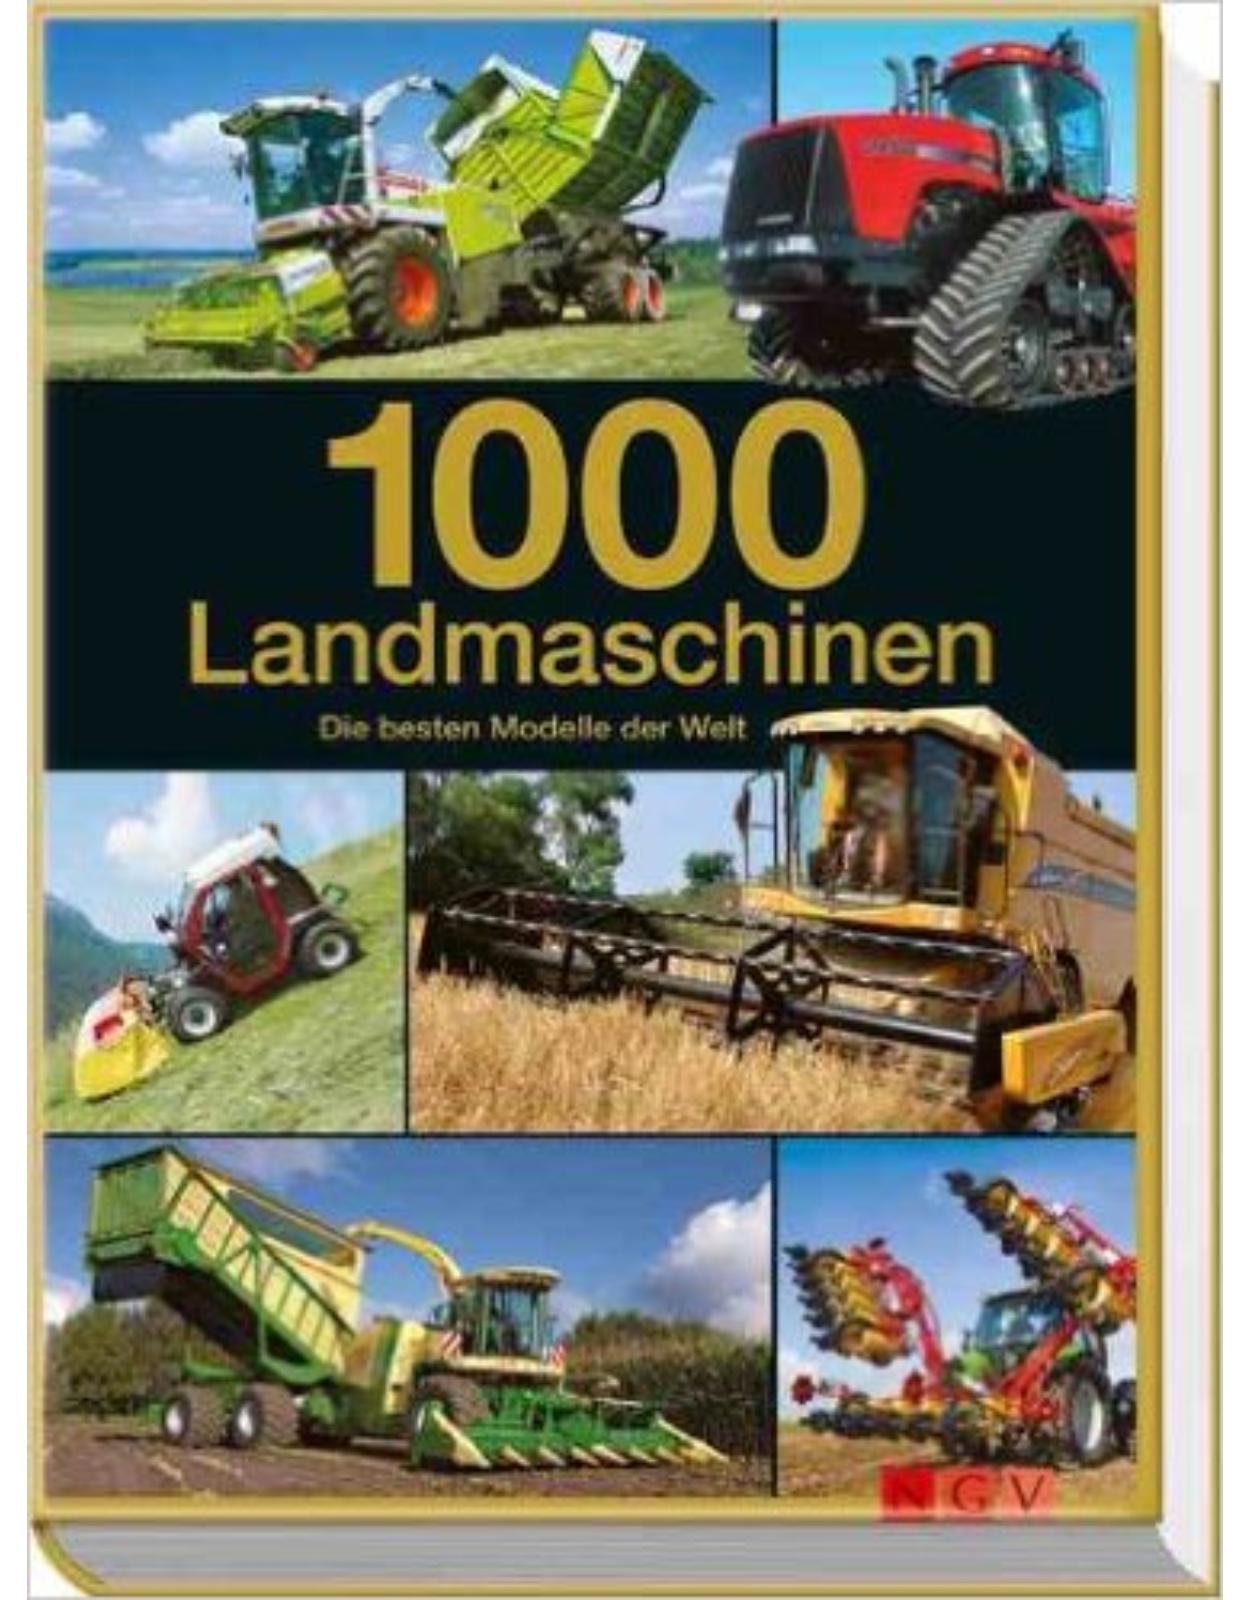 1000 Landmaschinen: Die besten Modelle der Welt